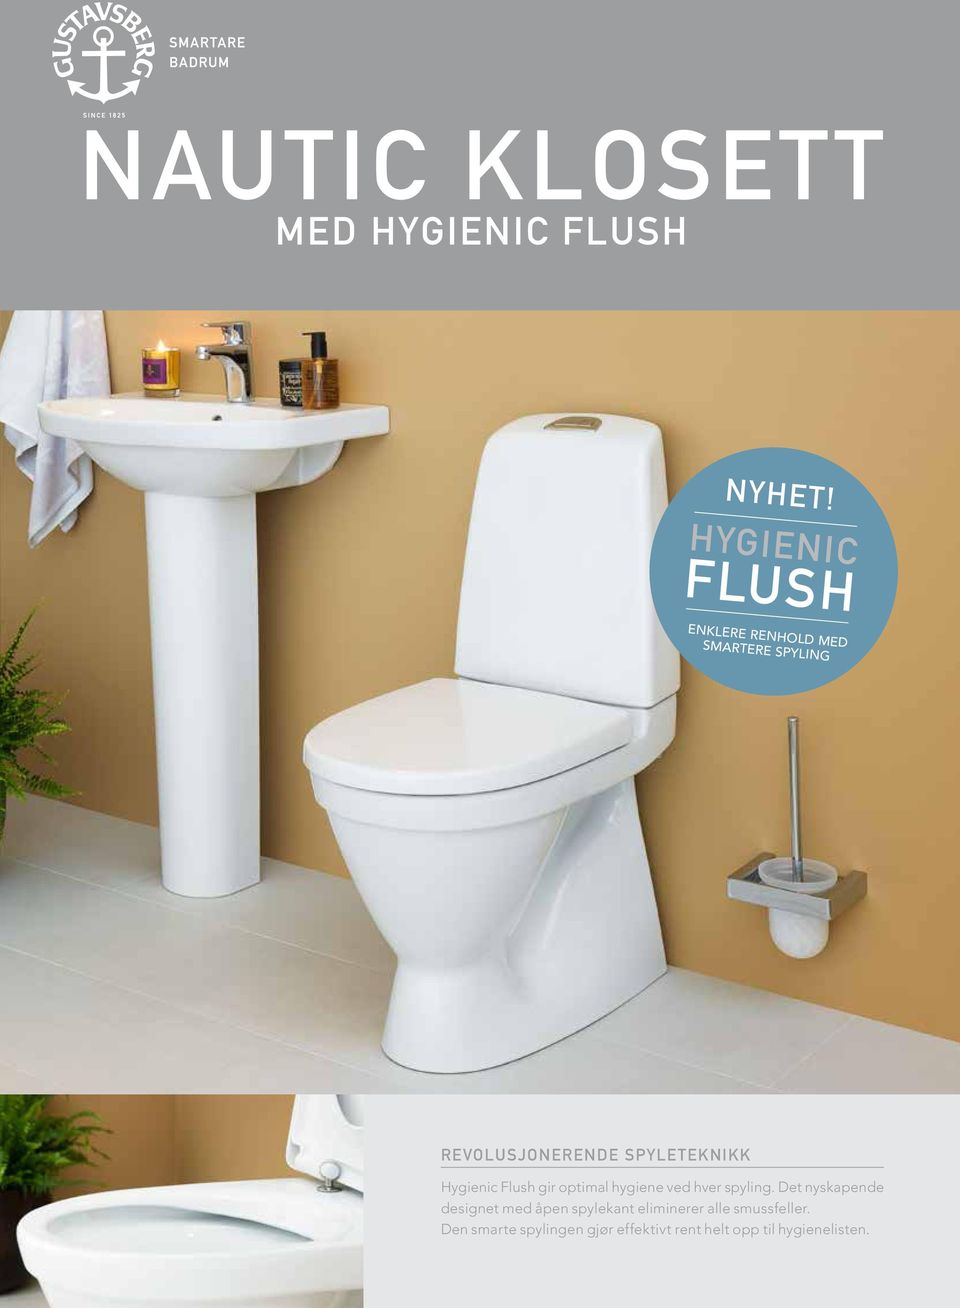 SPYLETEKNIKK Hygienic Flush gir optimal hygiene ved hver spyling.